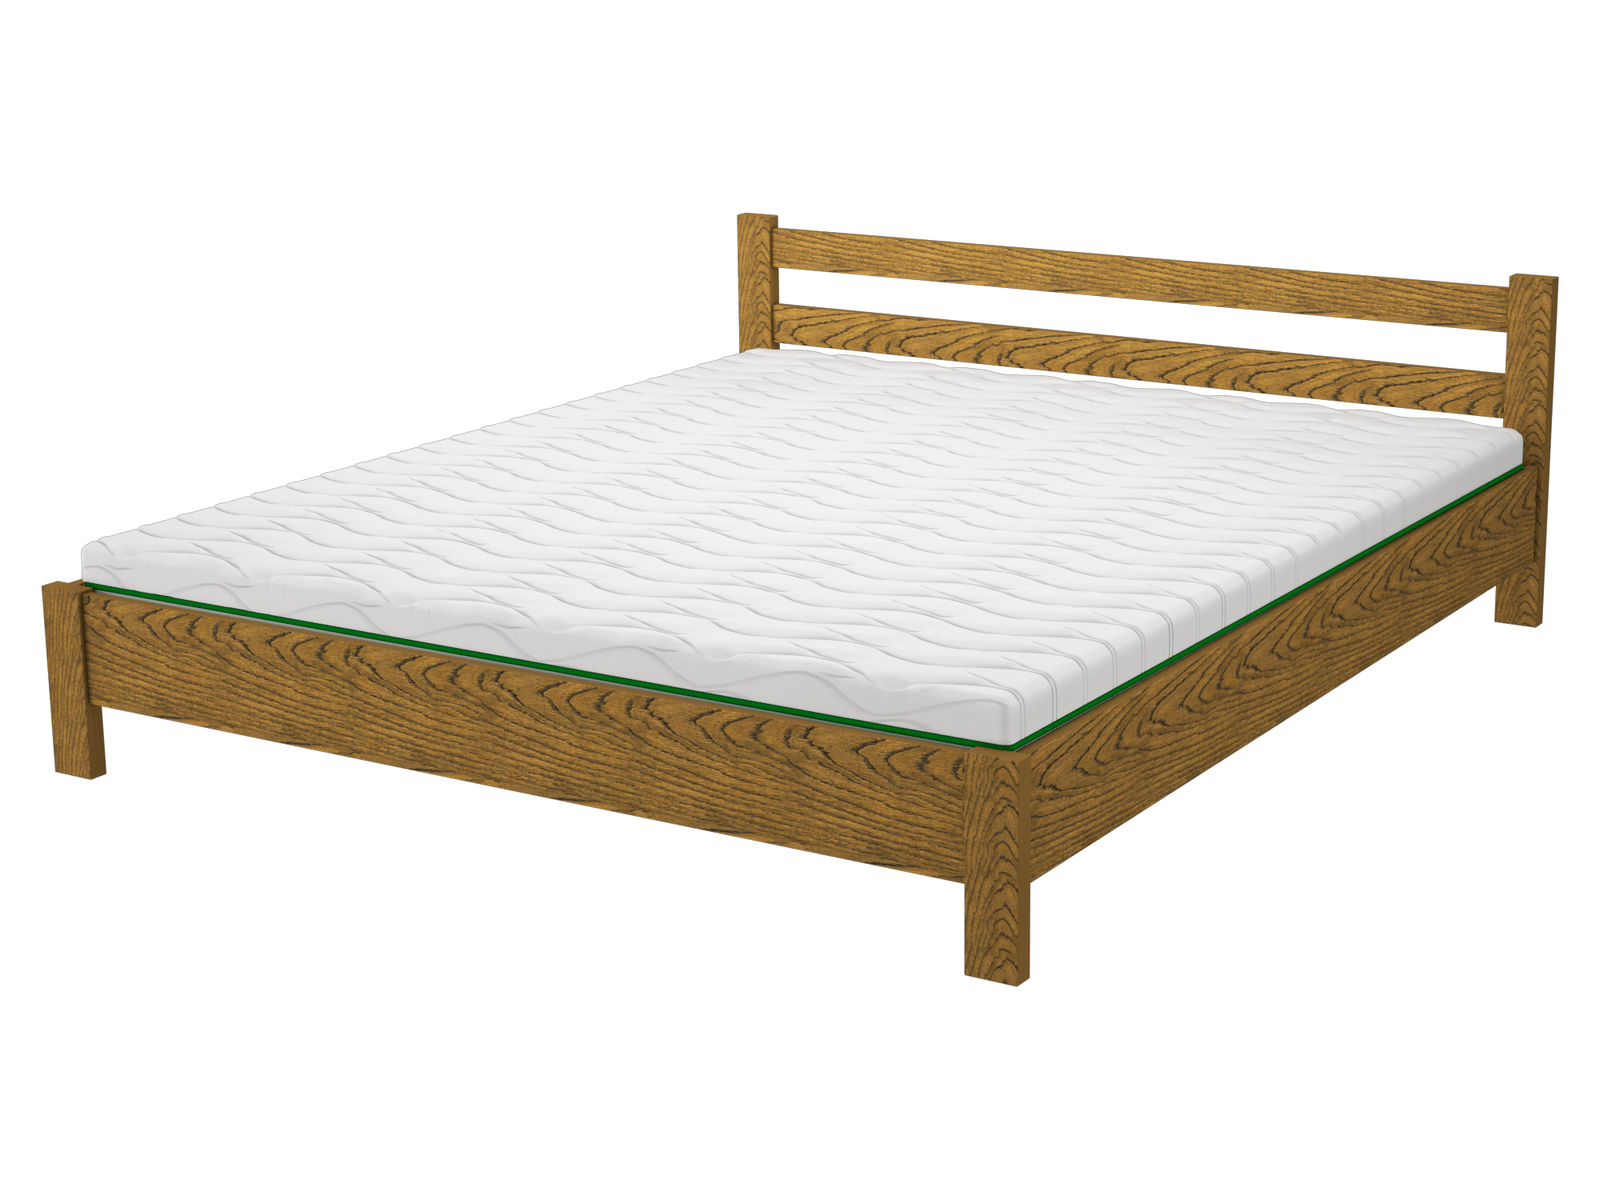 Комплект кровать деревянная FWOOD Майя + матрас Air Dream Millenium